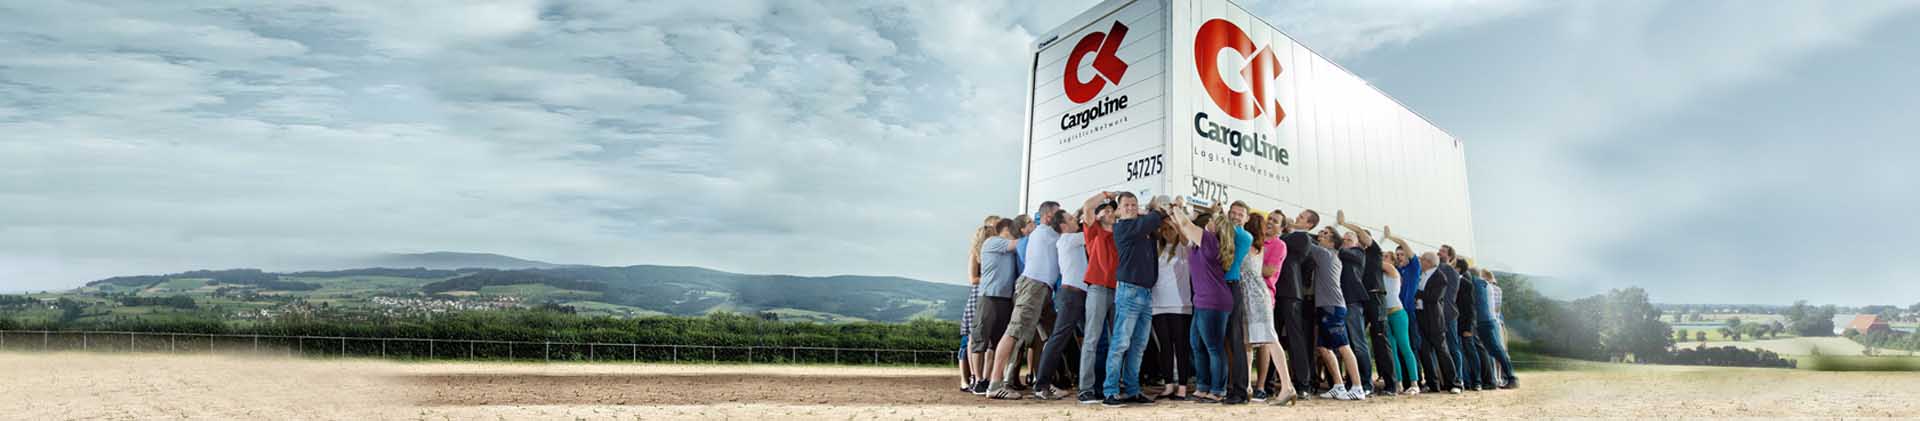 Die Stückgutkooperation CargoLine zeichnet aus, dass sich alle Mitarbeiter aufeinander verlassen können.